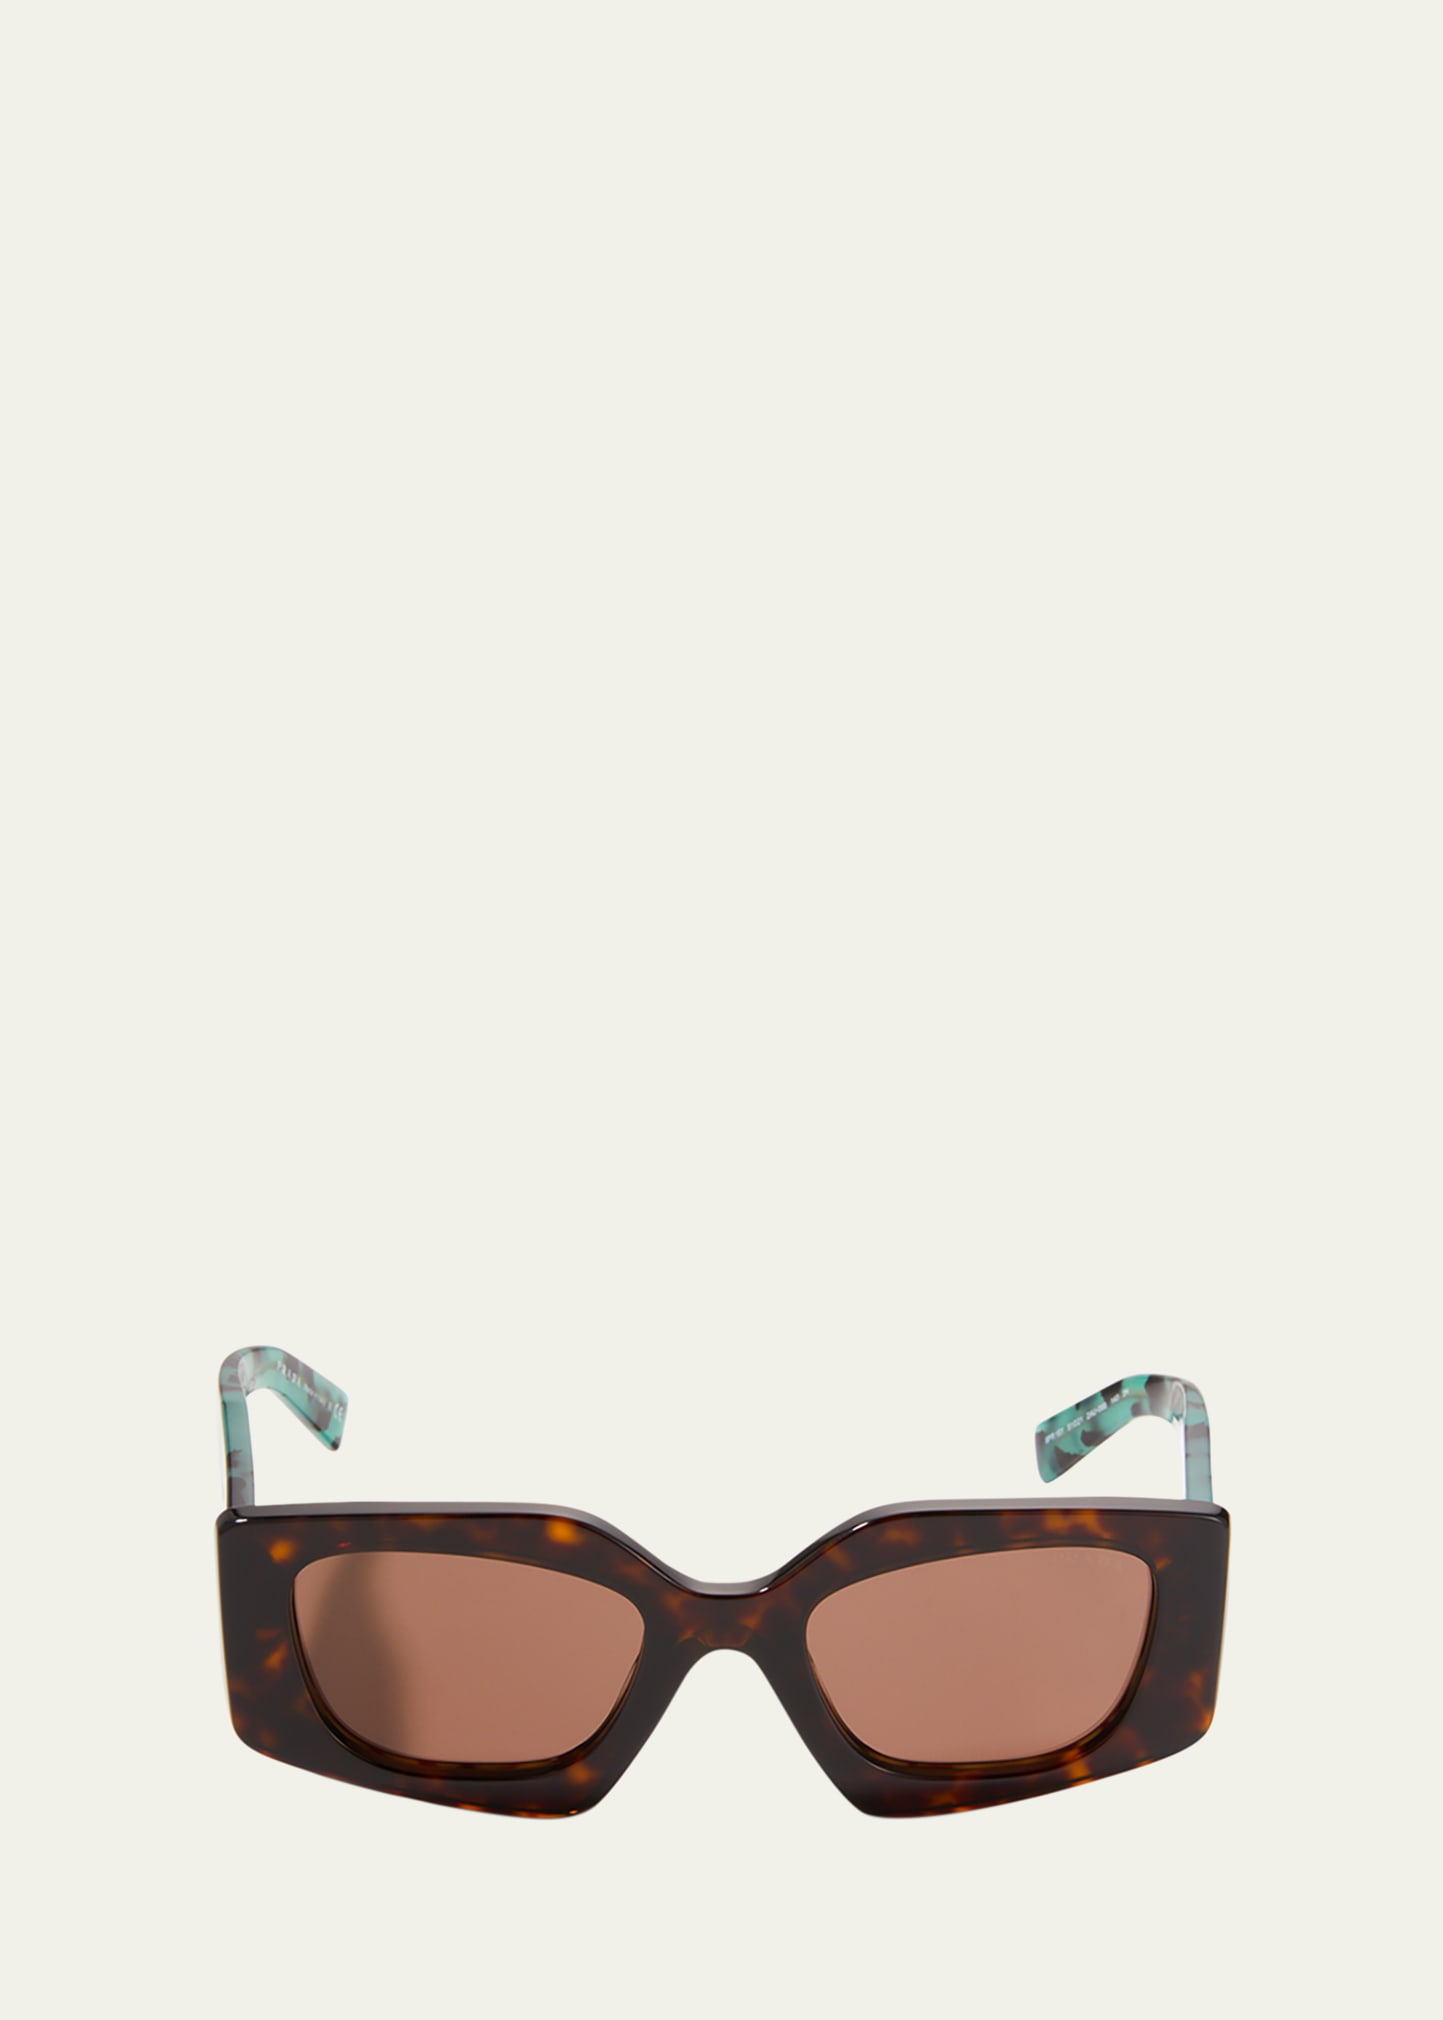 PRADA Women's Sunglasses, PR 13ZS - Macy's